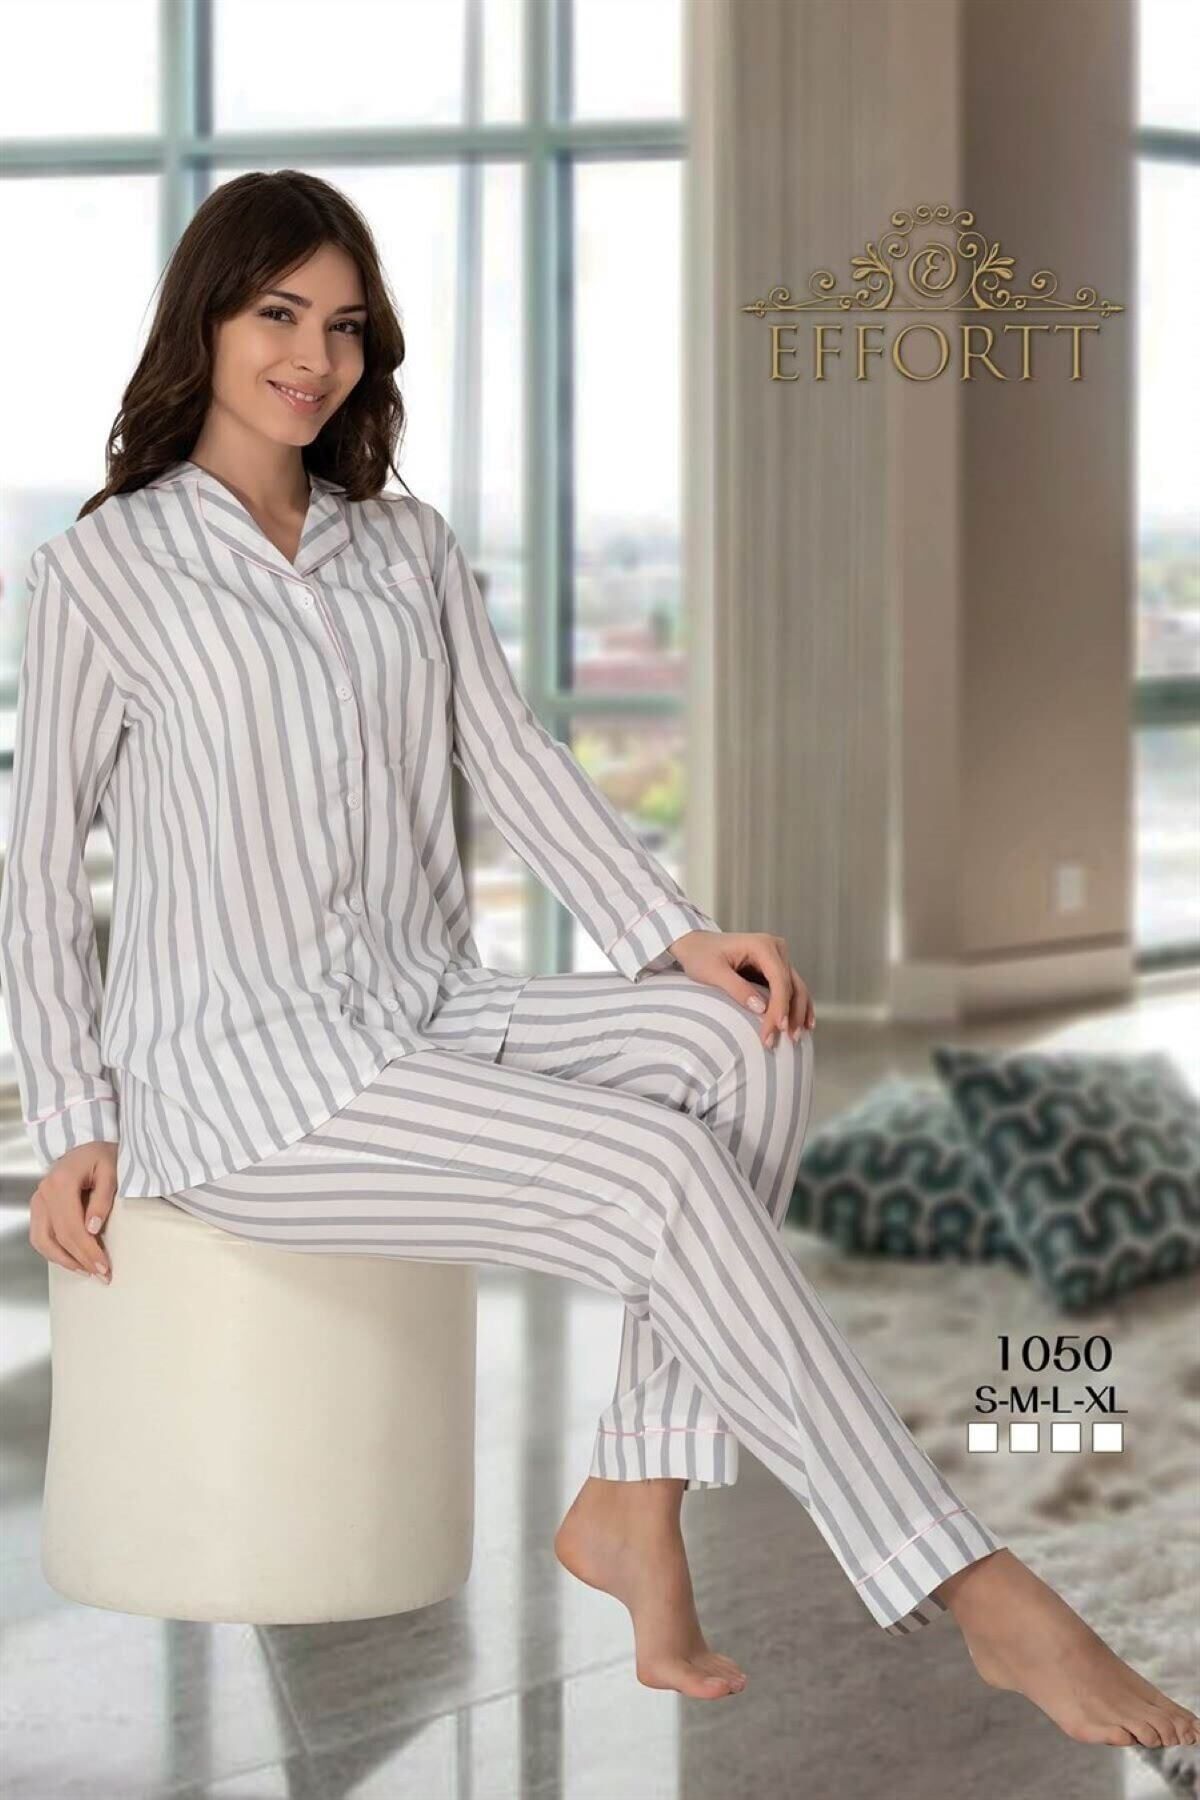 Effort Pijama Çizgili Önden Düğmeli Pijama Takımı